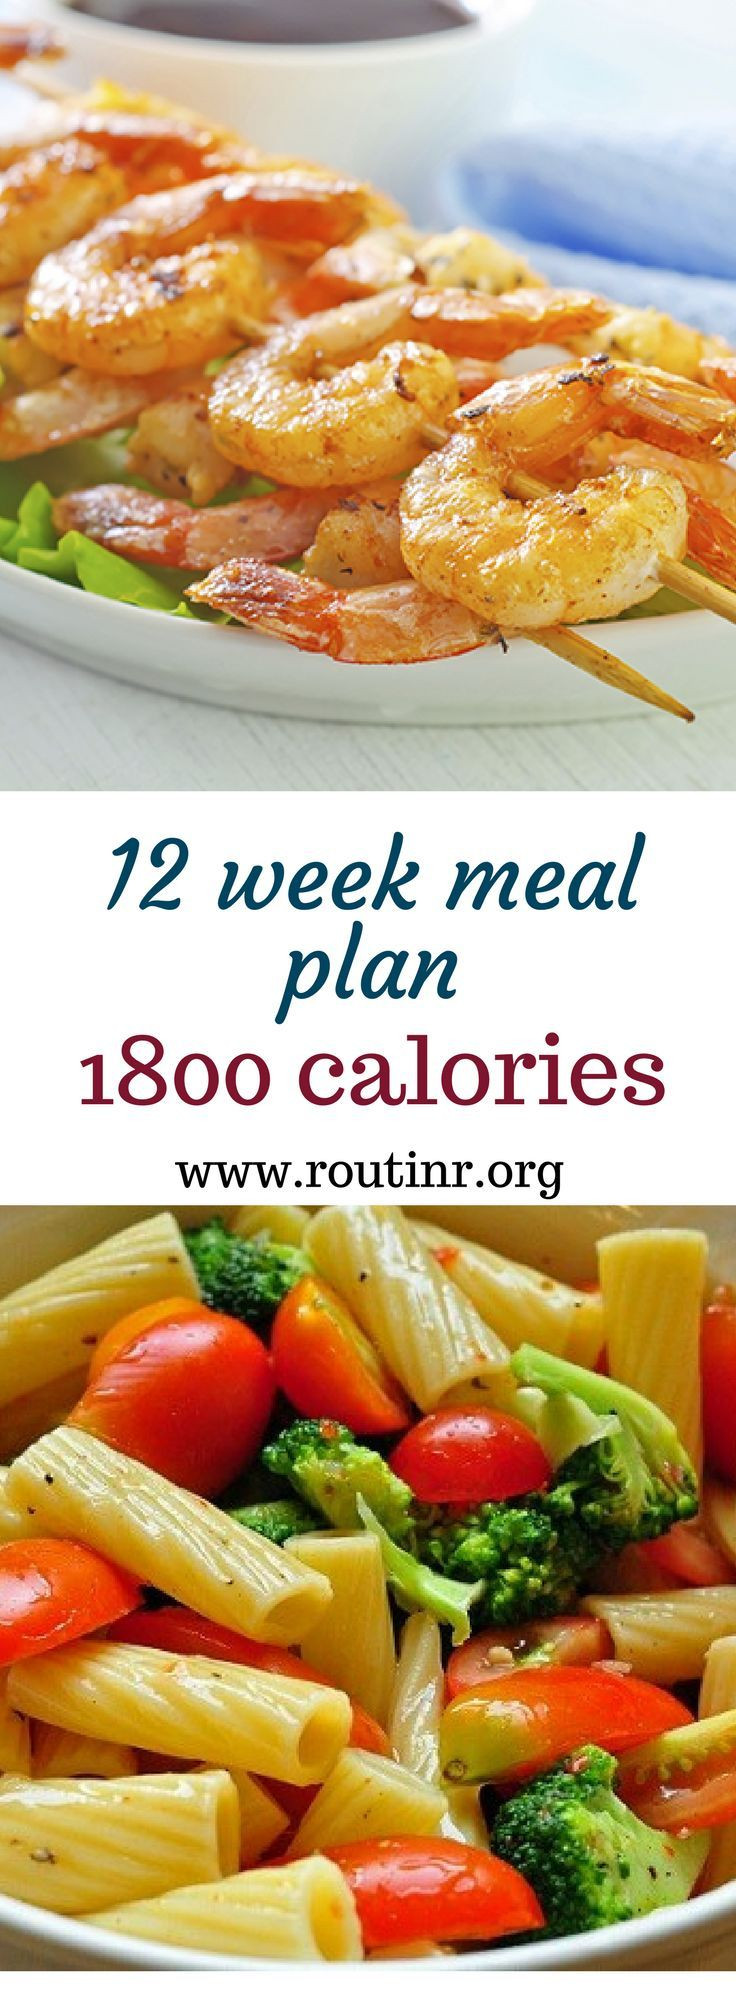 Ketosis Diet Plan 12 Weeks
 Keto Meal Plans 12 week meal plan 1800 calories An 1800